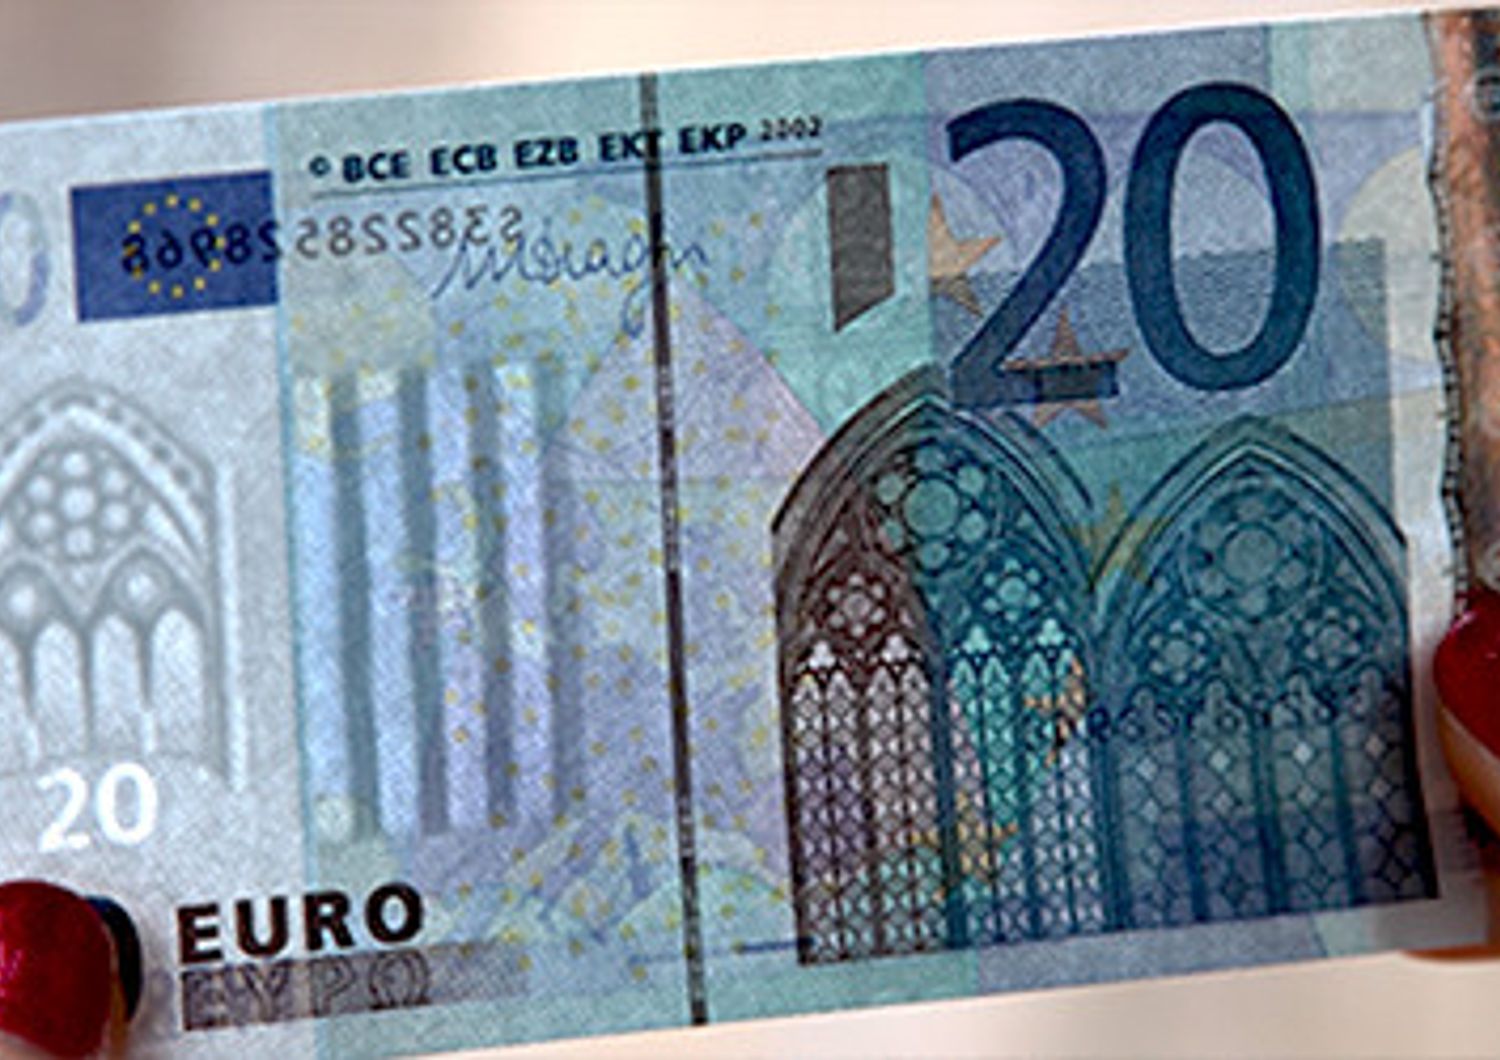 &nbsp;Euro falsi banconote false